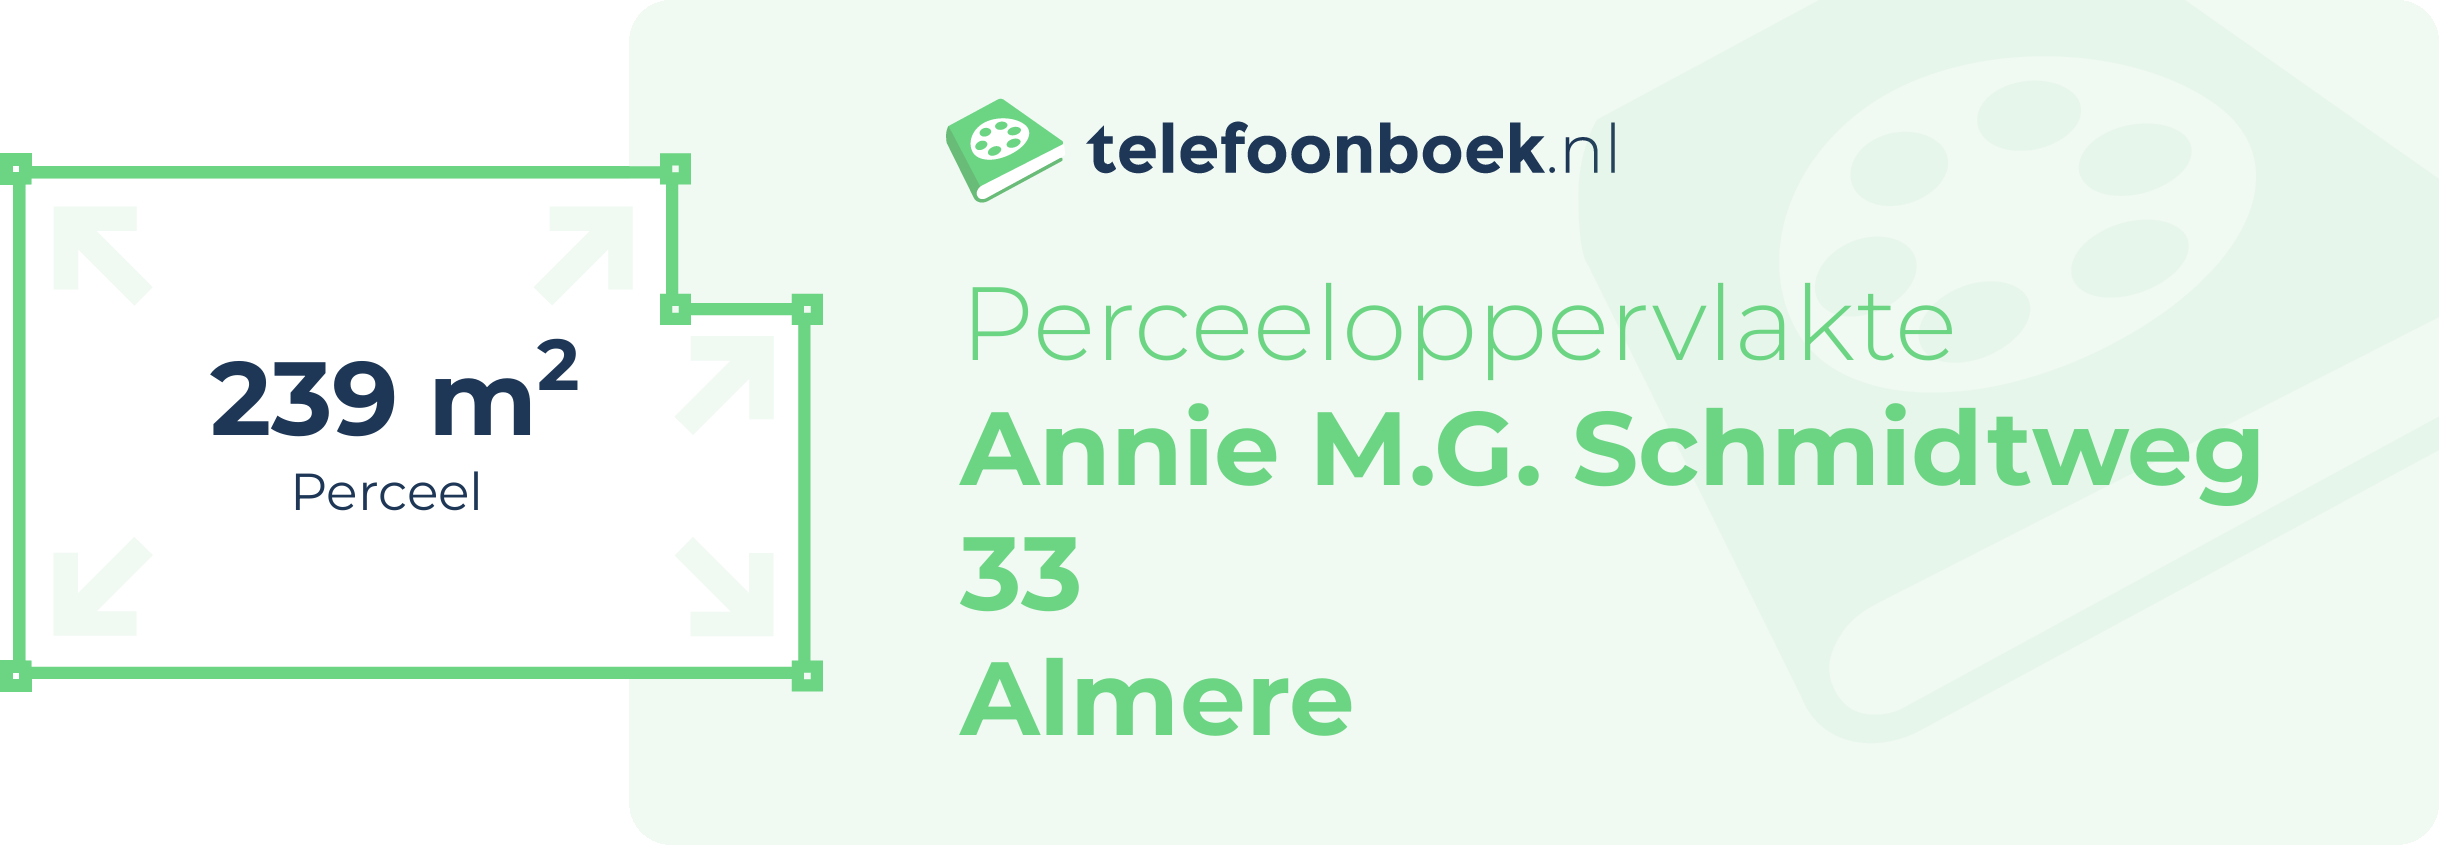 Perceeloppervlakte Annie M.G. Schmidtweg 33 Almere